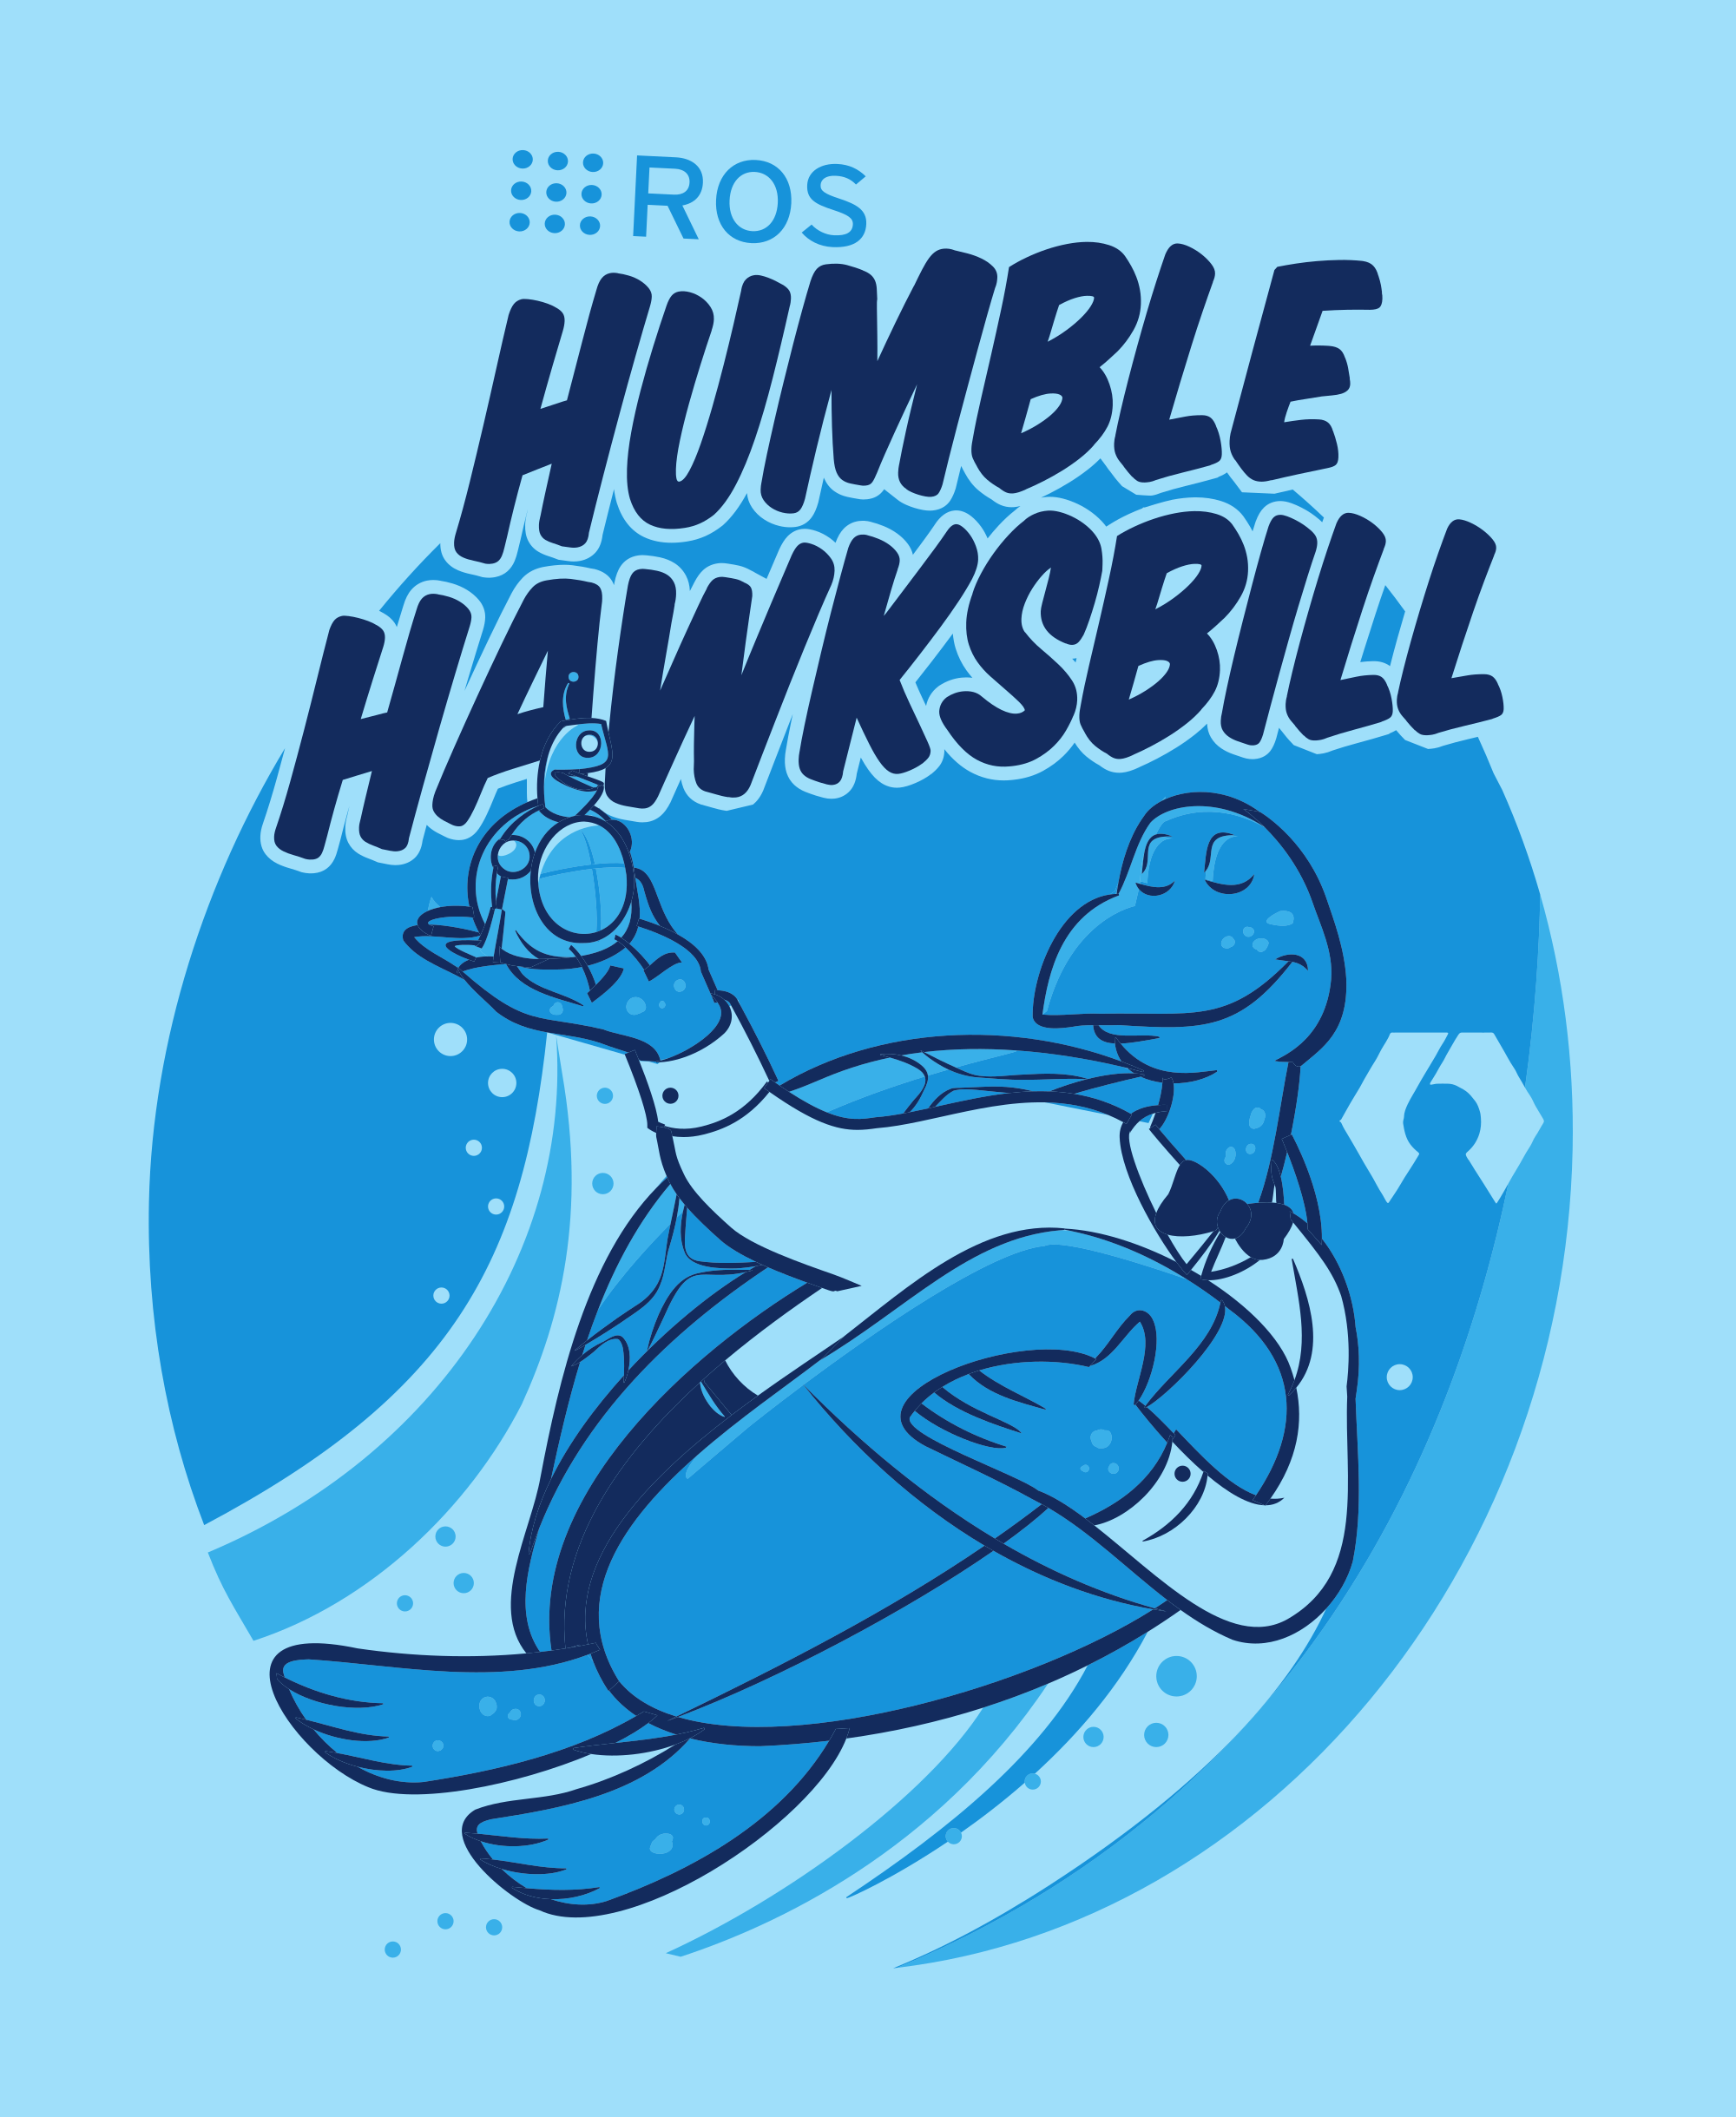 HumbleHawksbill.png